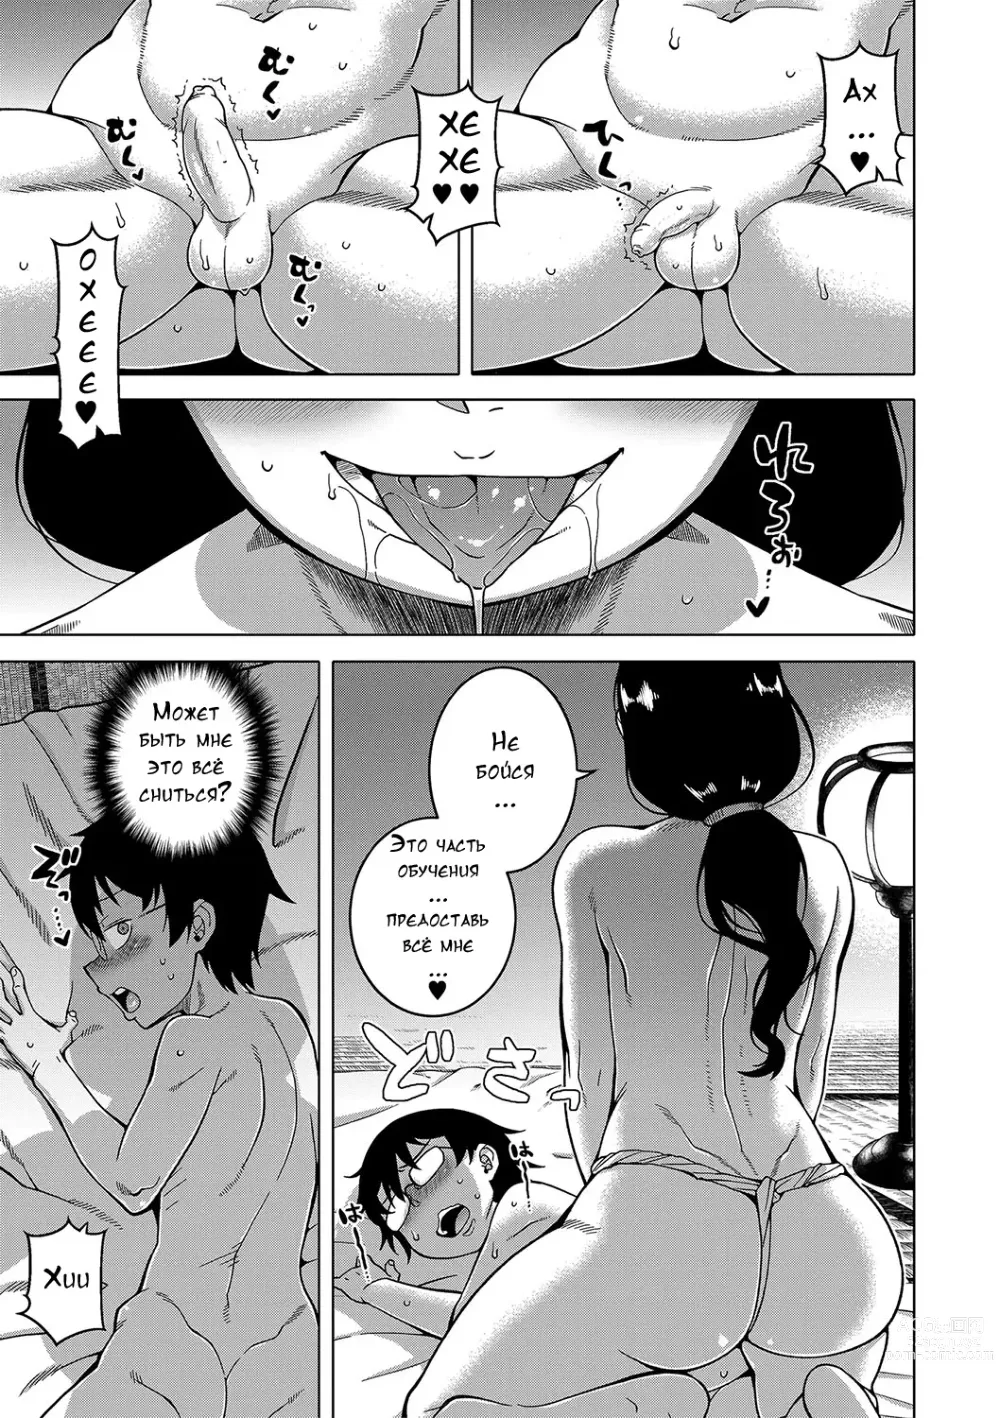 Page 19 of manga Kami-sama no Tsukurikata